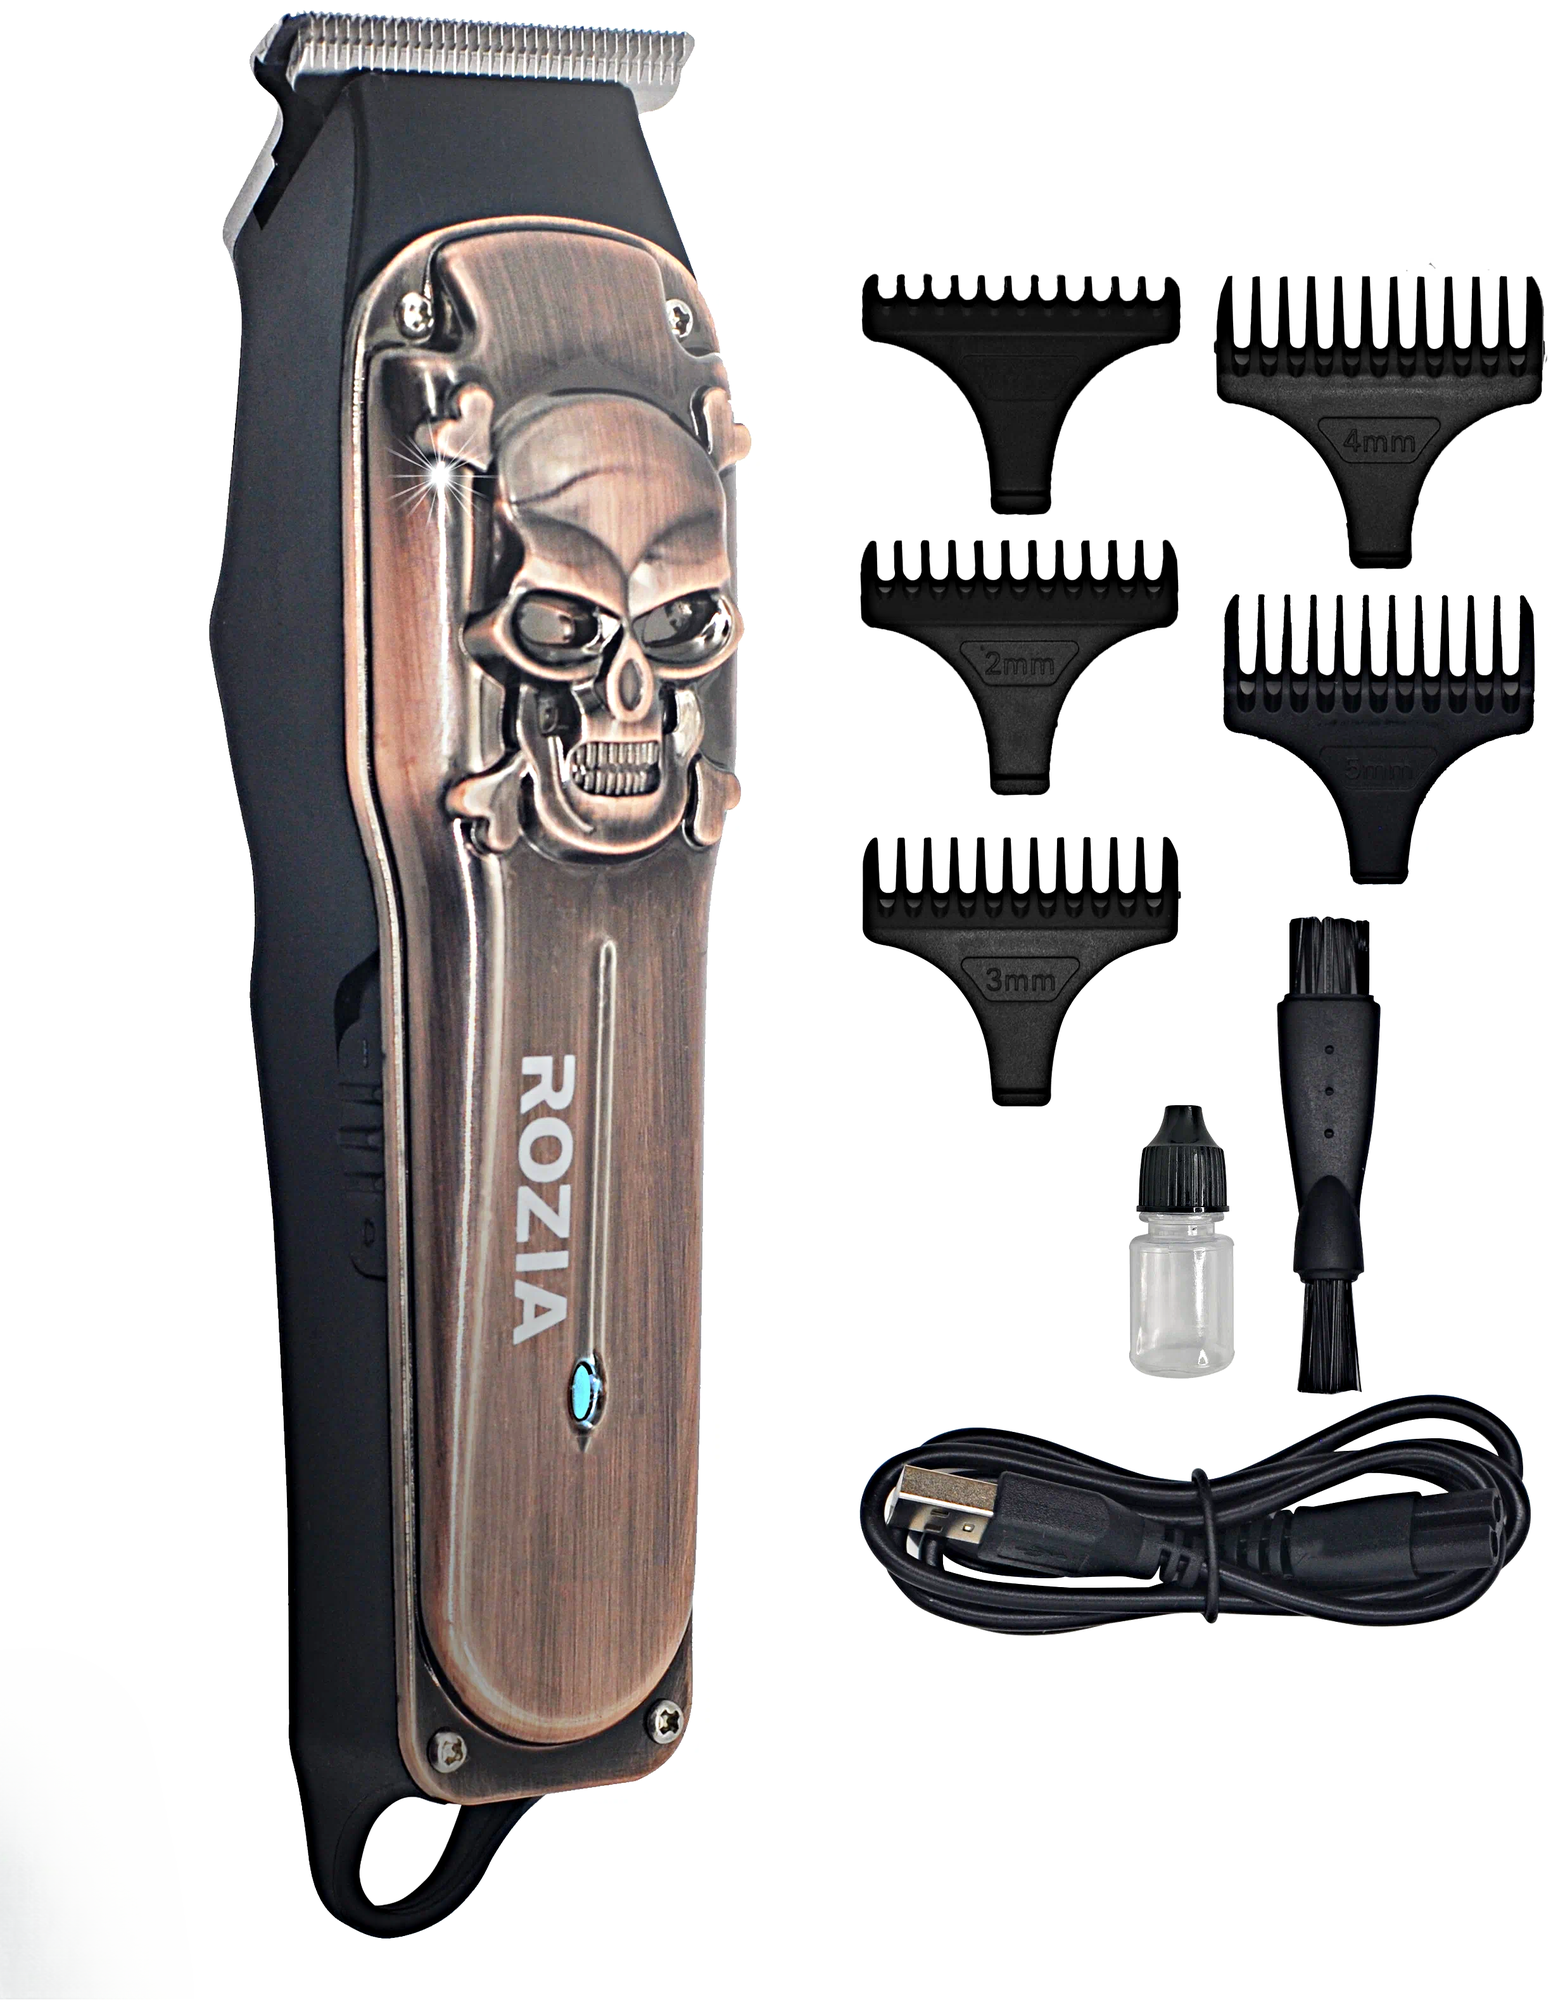 Машинка для стрижки волос Rozia, Профессиональный триммер для стрижки волос, для бороды, усов, Бронзовый